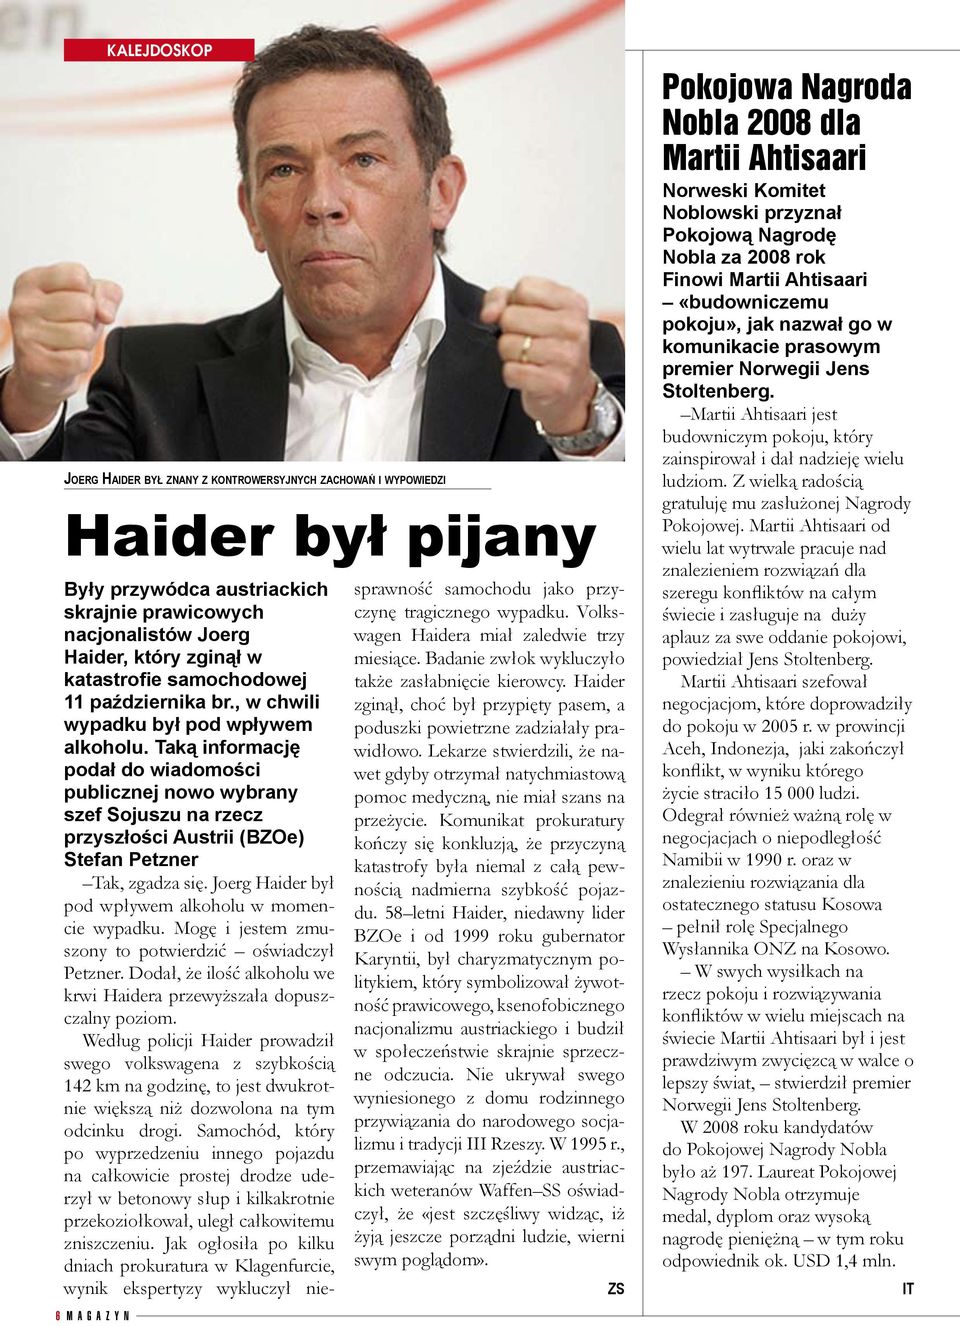 Taką informację podał do wiadomości publicznej nowo wybrany szef Sojuszu na rzecz przyszłości Austrii (BZOe) Stefan Petzner Tak, zgadza się. Joerg Haider był pod wpływem alkoholu w momencie wypadku.